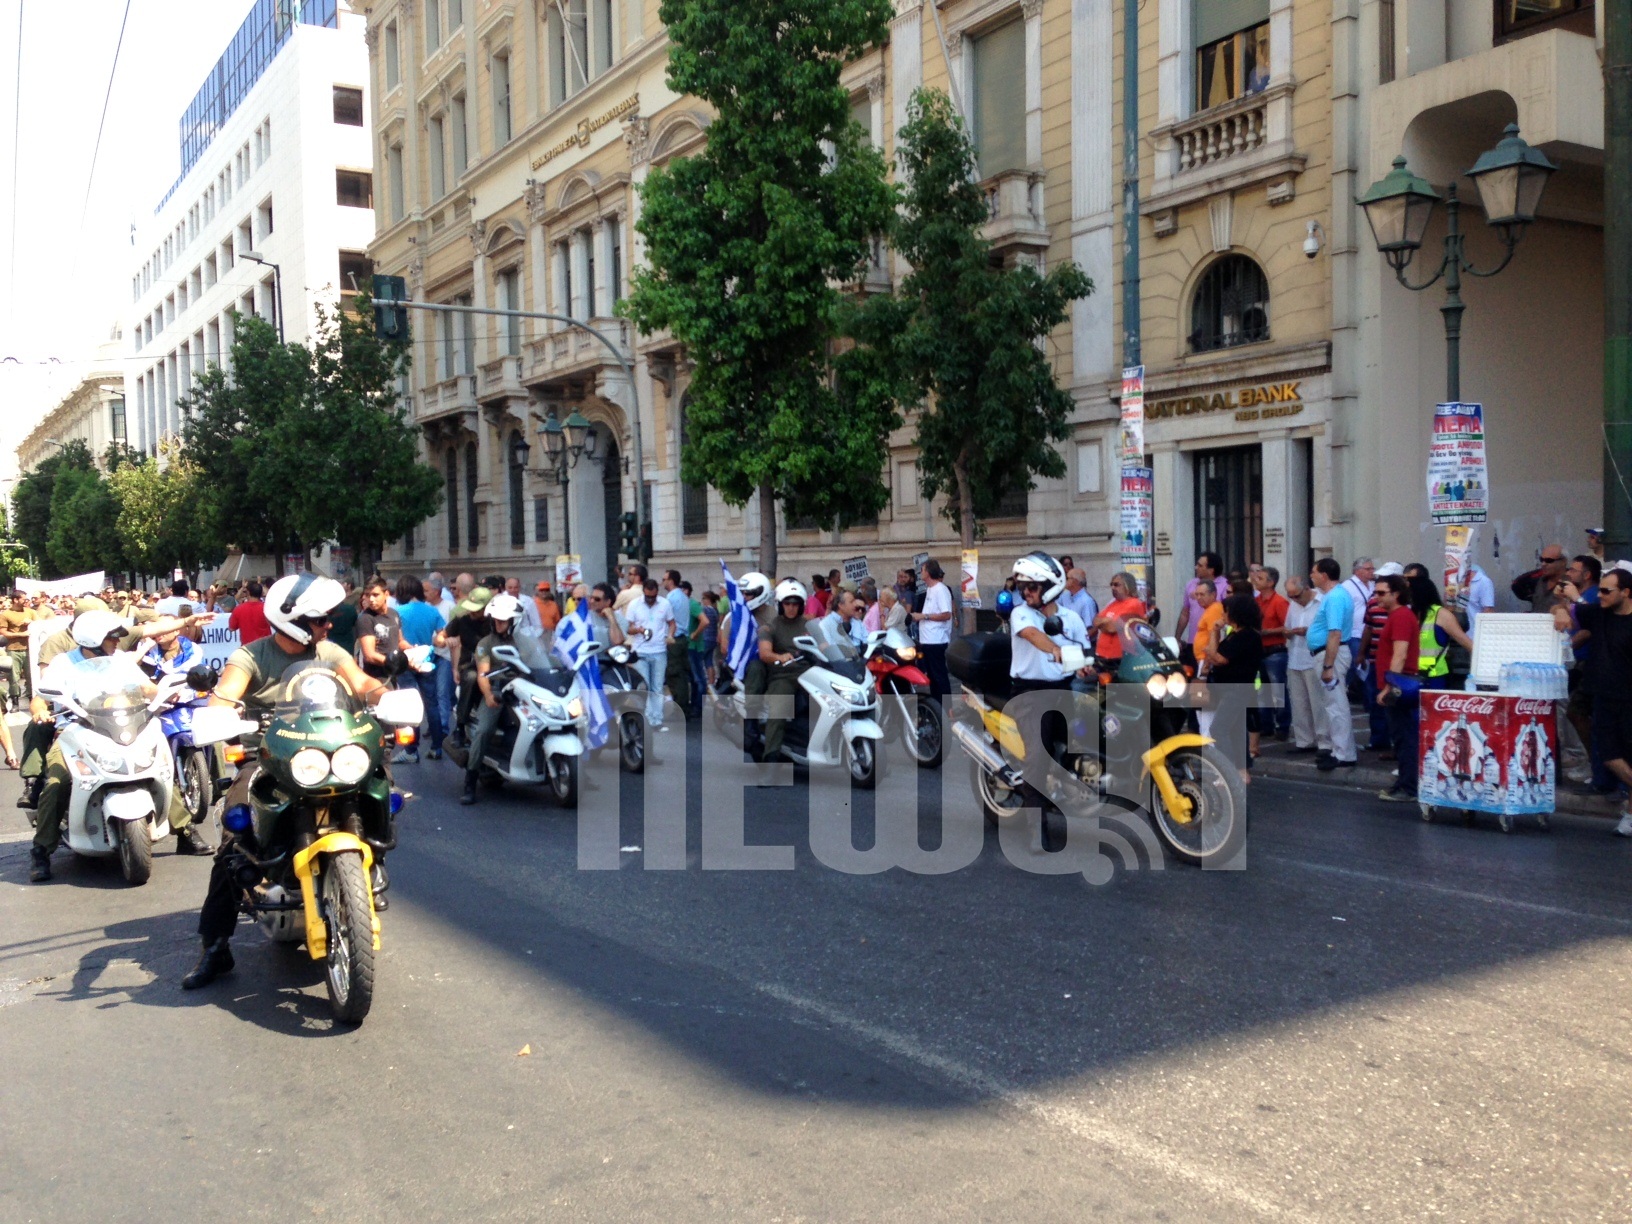 Με αυτοκίνητα και μηχανές οι δημοτικοί αστυνομικοί έφτασαν στην οδό Σταδίου. ΦΩΤΟ NEWSIT